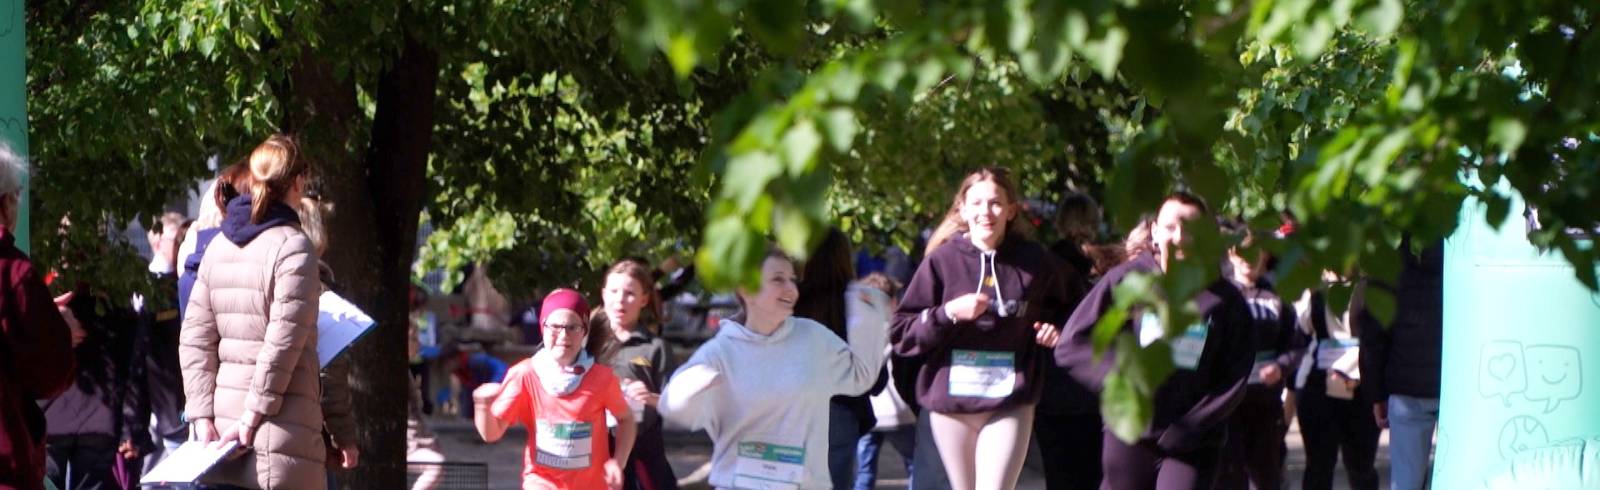 Caritas LaufWunder: Laufen für Menschen in Not